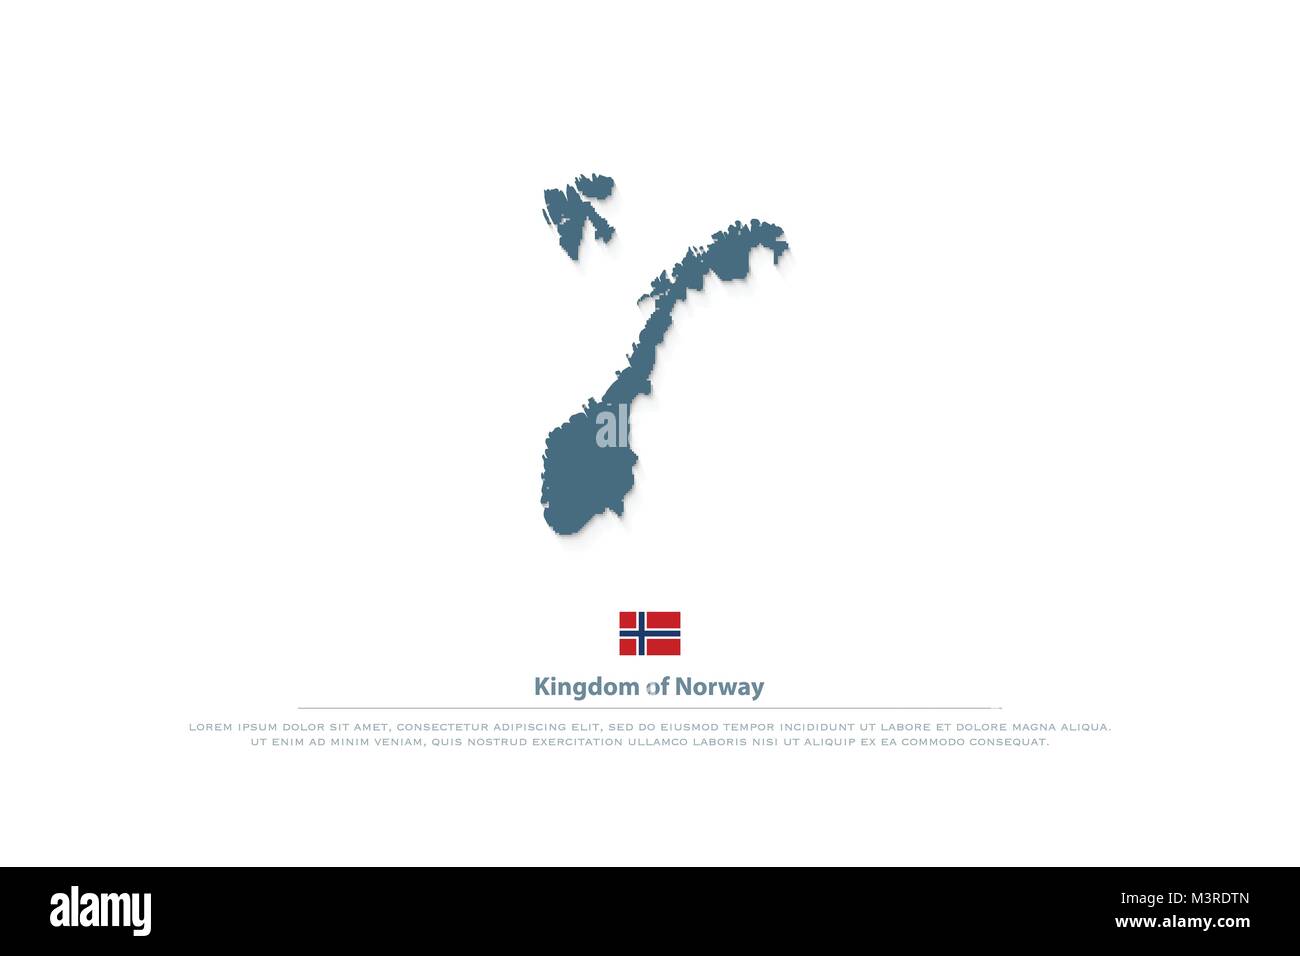 Königreich Norwegen isoliert Karten und offizielle Flagge Symbol. Vektor norwegischem Gebiet Logo. Nordische Land geographische banner Vorlage. Reise- und Busines Stock Vektor